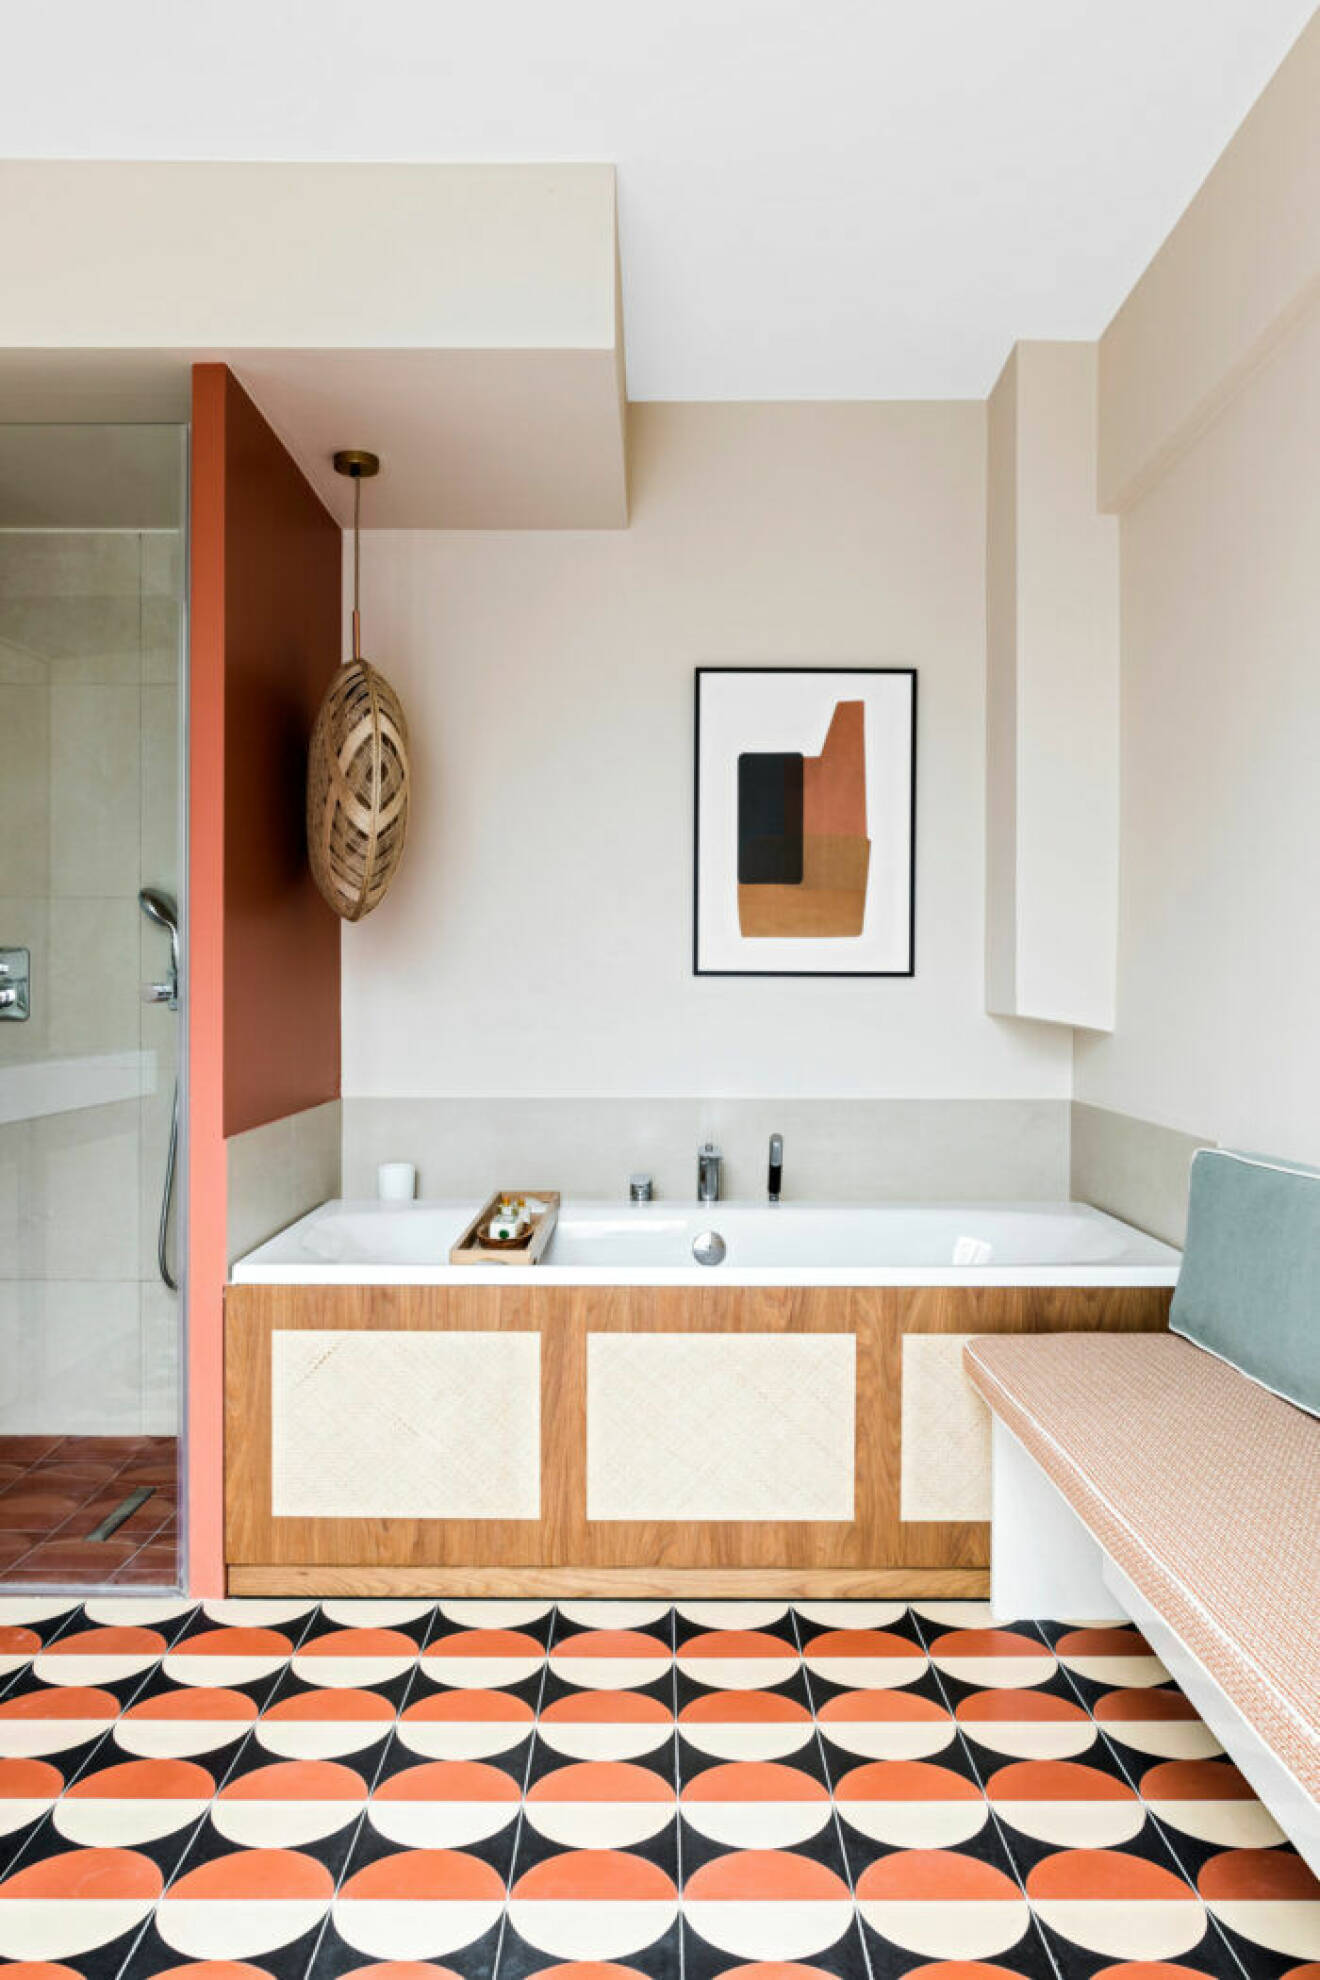 Badrum med golvplattor i geometriskt mönster som för tankarna till 60–talet